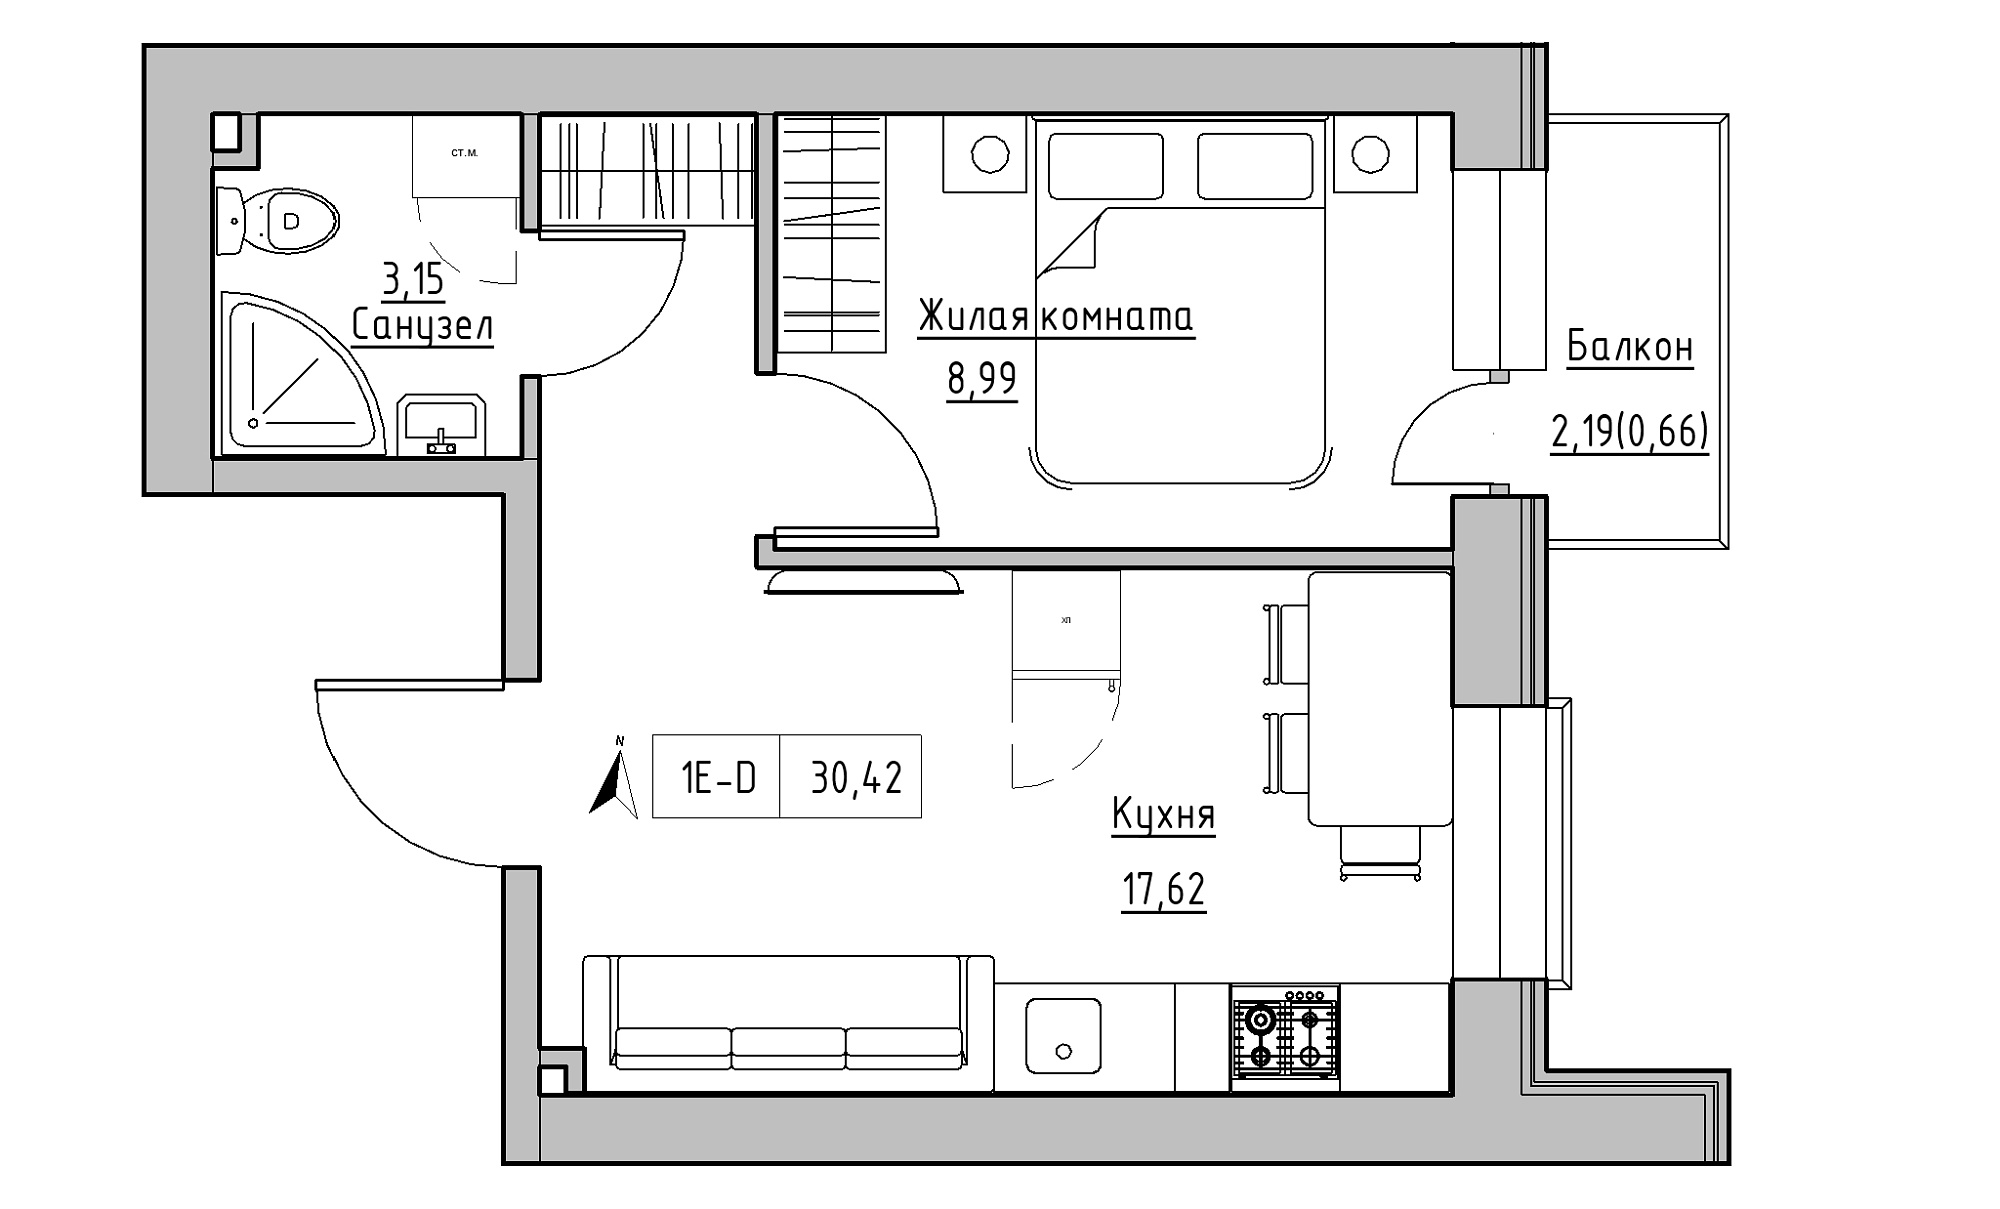 Планировка 1-к квартира площей 30.42м2, KS-016-04/0013.